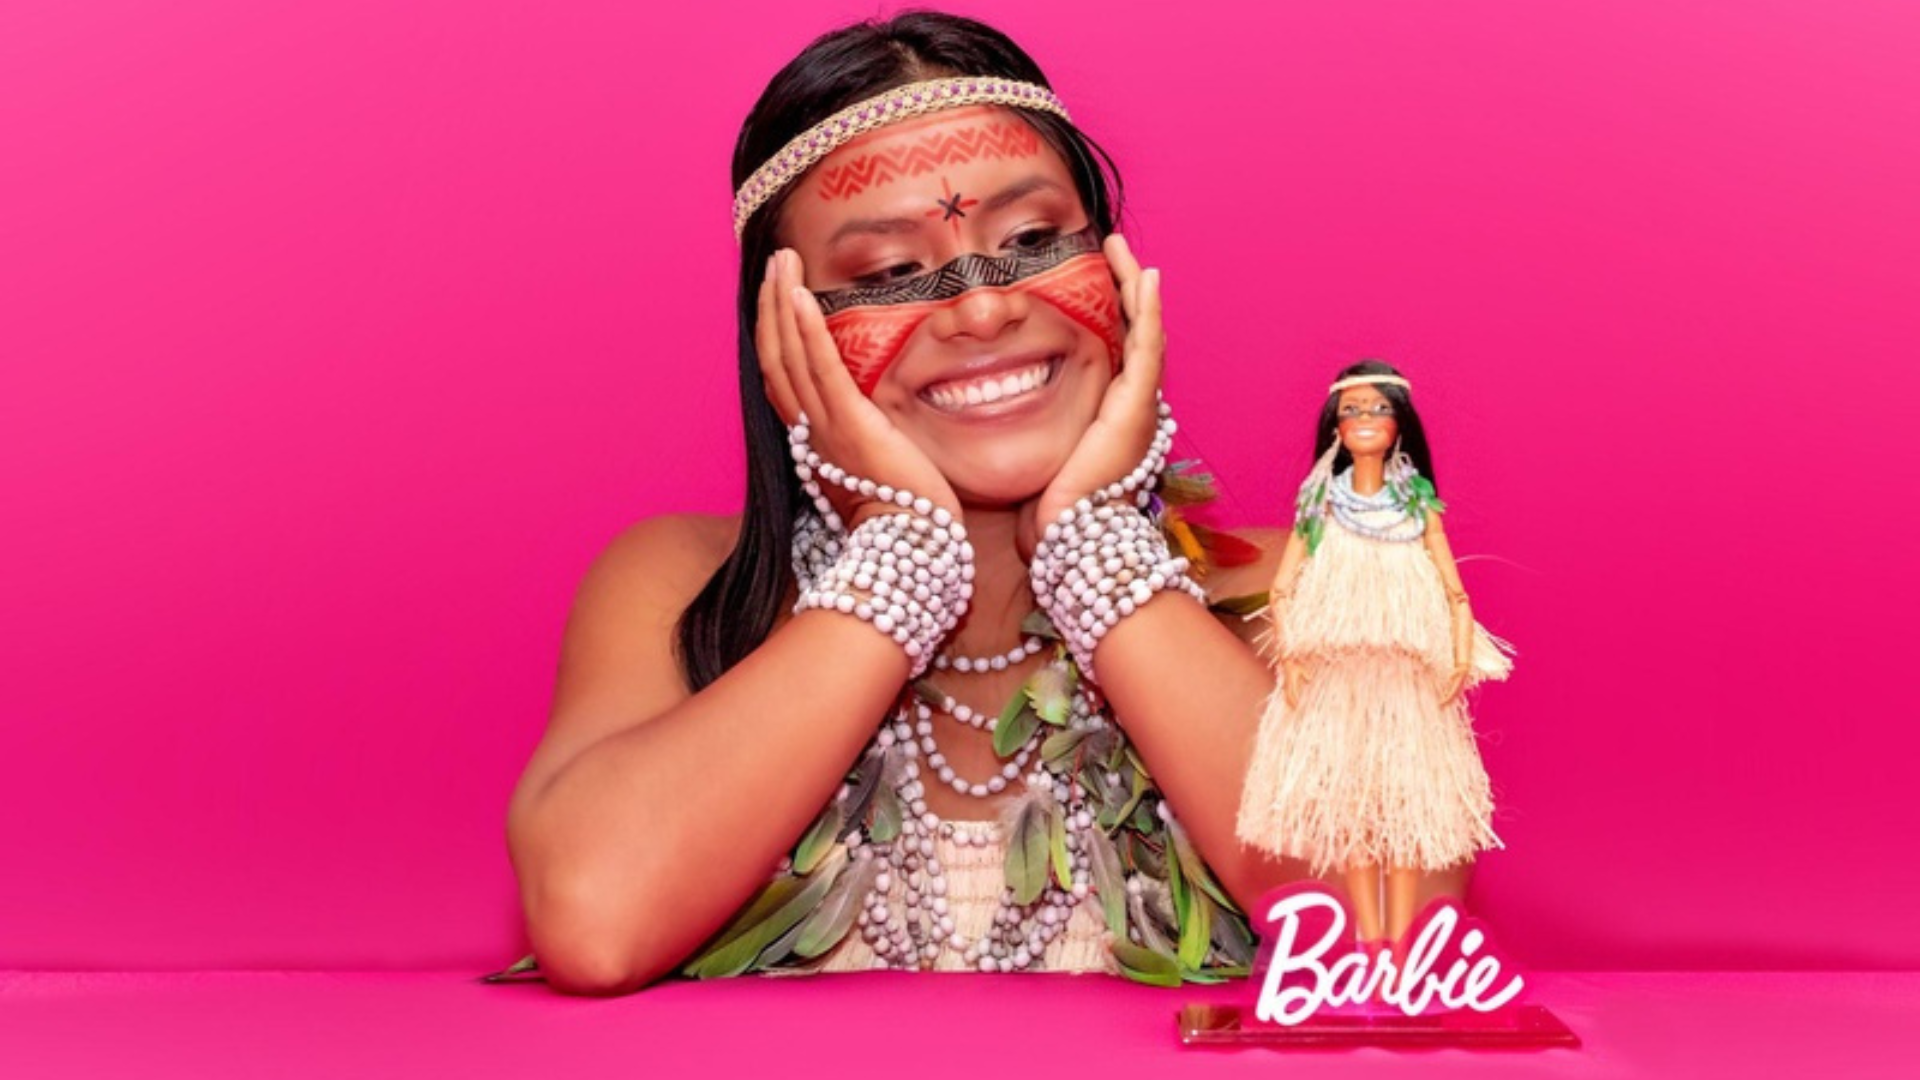 Celebrando seus 65 anos, Barbie cria primeira boneca inspirada em uma indígena brasileira